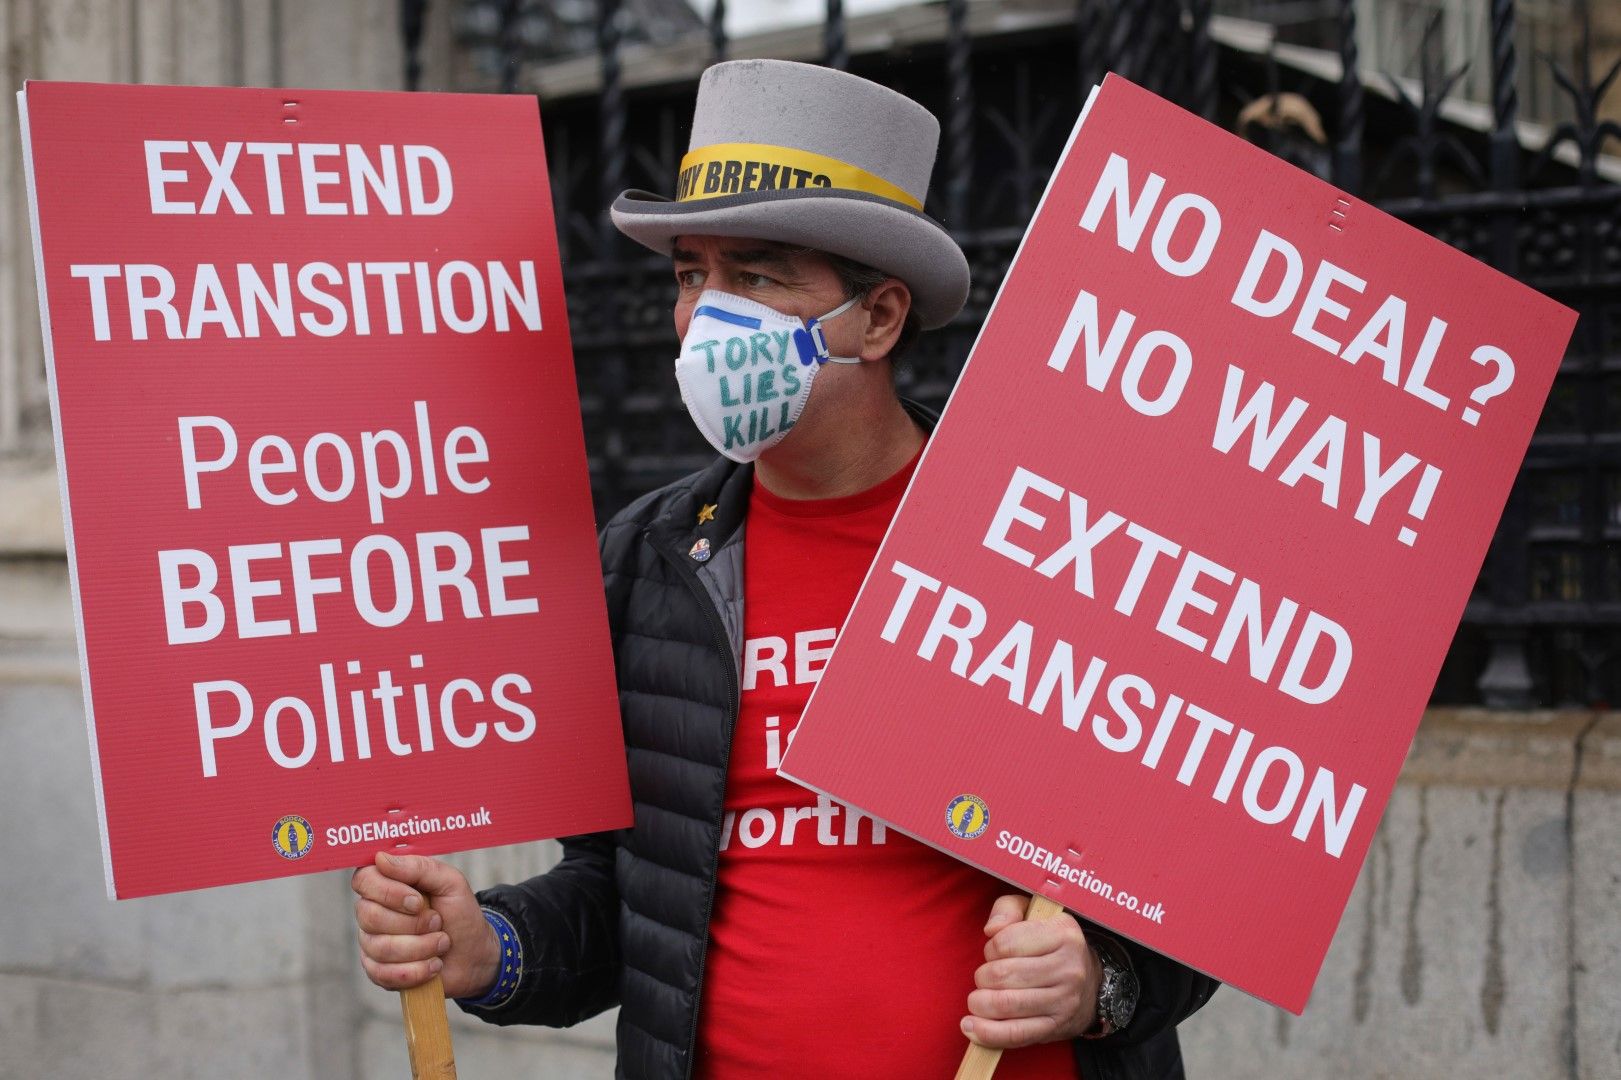 10 юни. Протест пред парламента в Лондон. Мъж държи плакат, в който иска удължаване на преходния период за преговори за сделка между Велокобритания и ЕС и който изтича в края на 2020 г. Юли е крайният срок, в който Лондон може да поиска удължаване